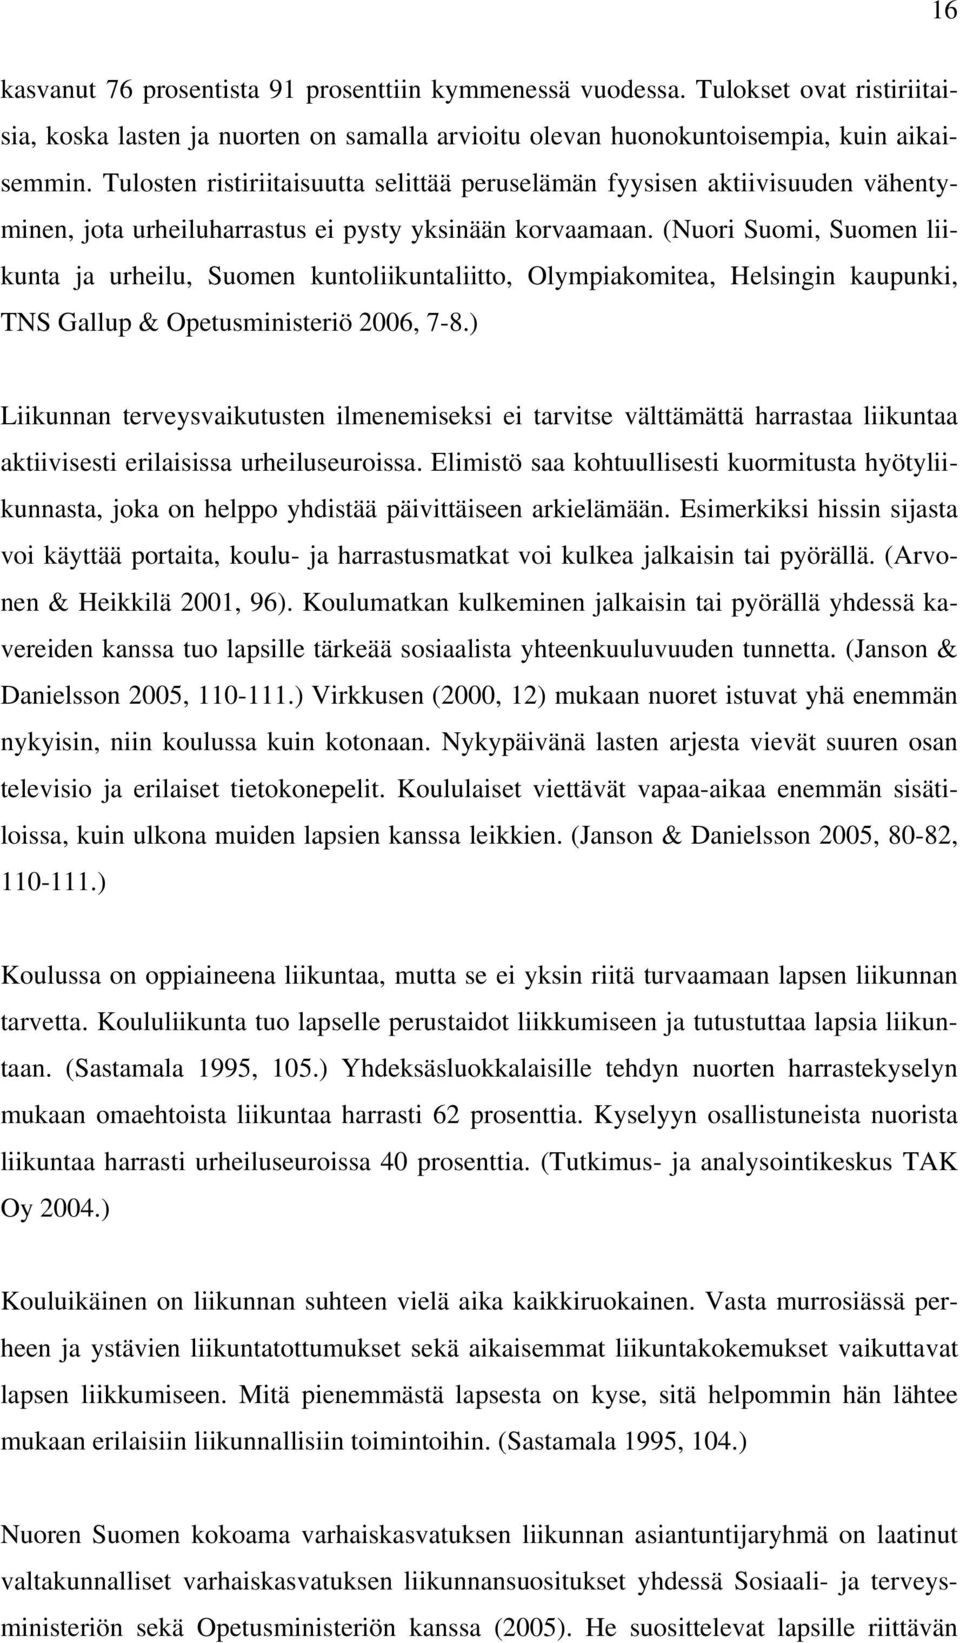 (Nuori Suomi, Suomen liikunta ja urheilu, Suomen kuntoliikuntaliitto, Olympiakomitea, Helsingin kaupunki, TNS Gallup & Opetusministeriö 2006, 7-8.